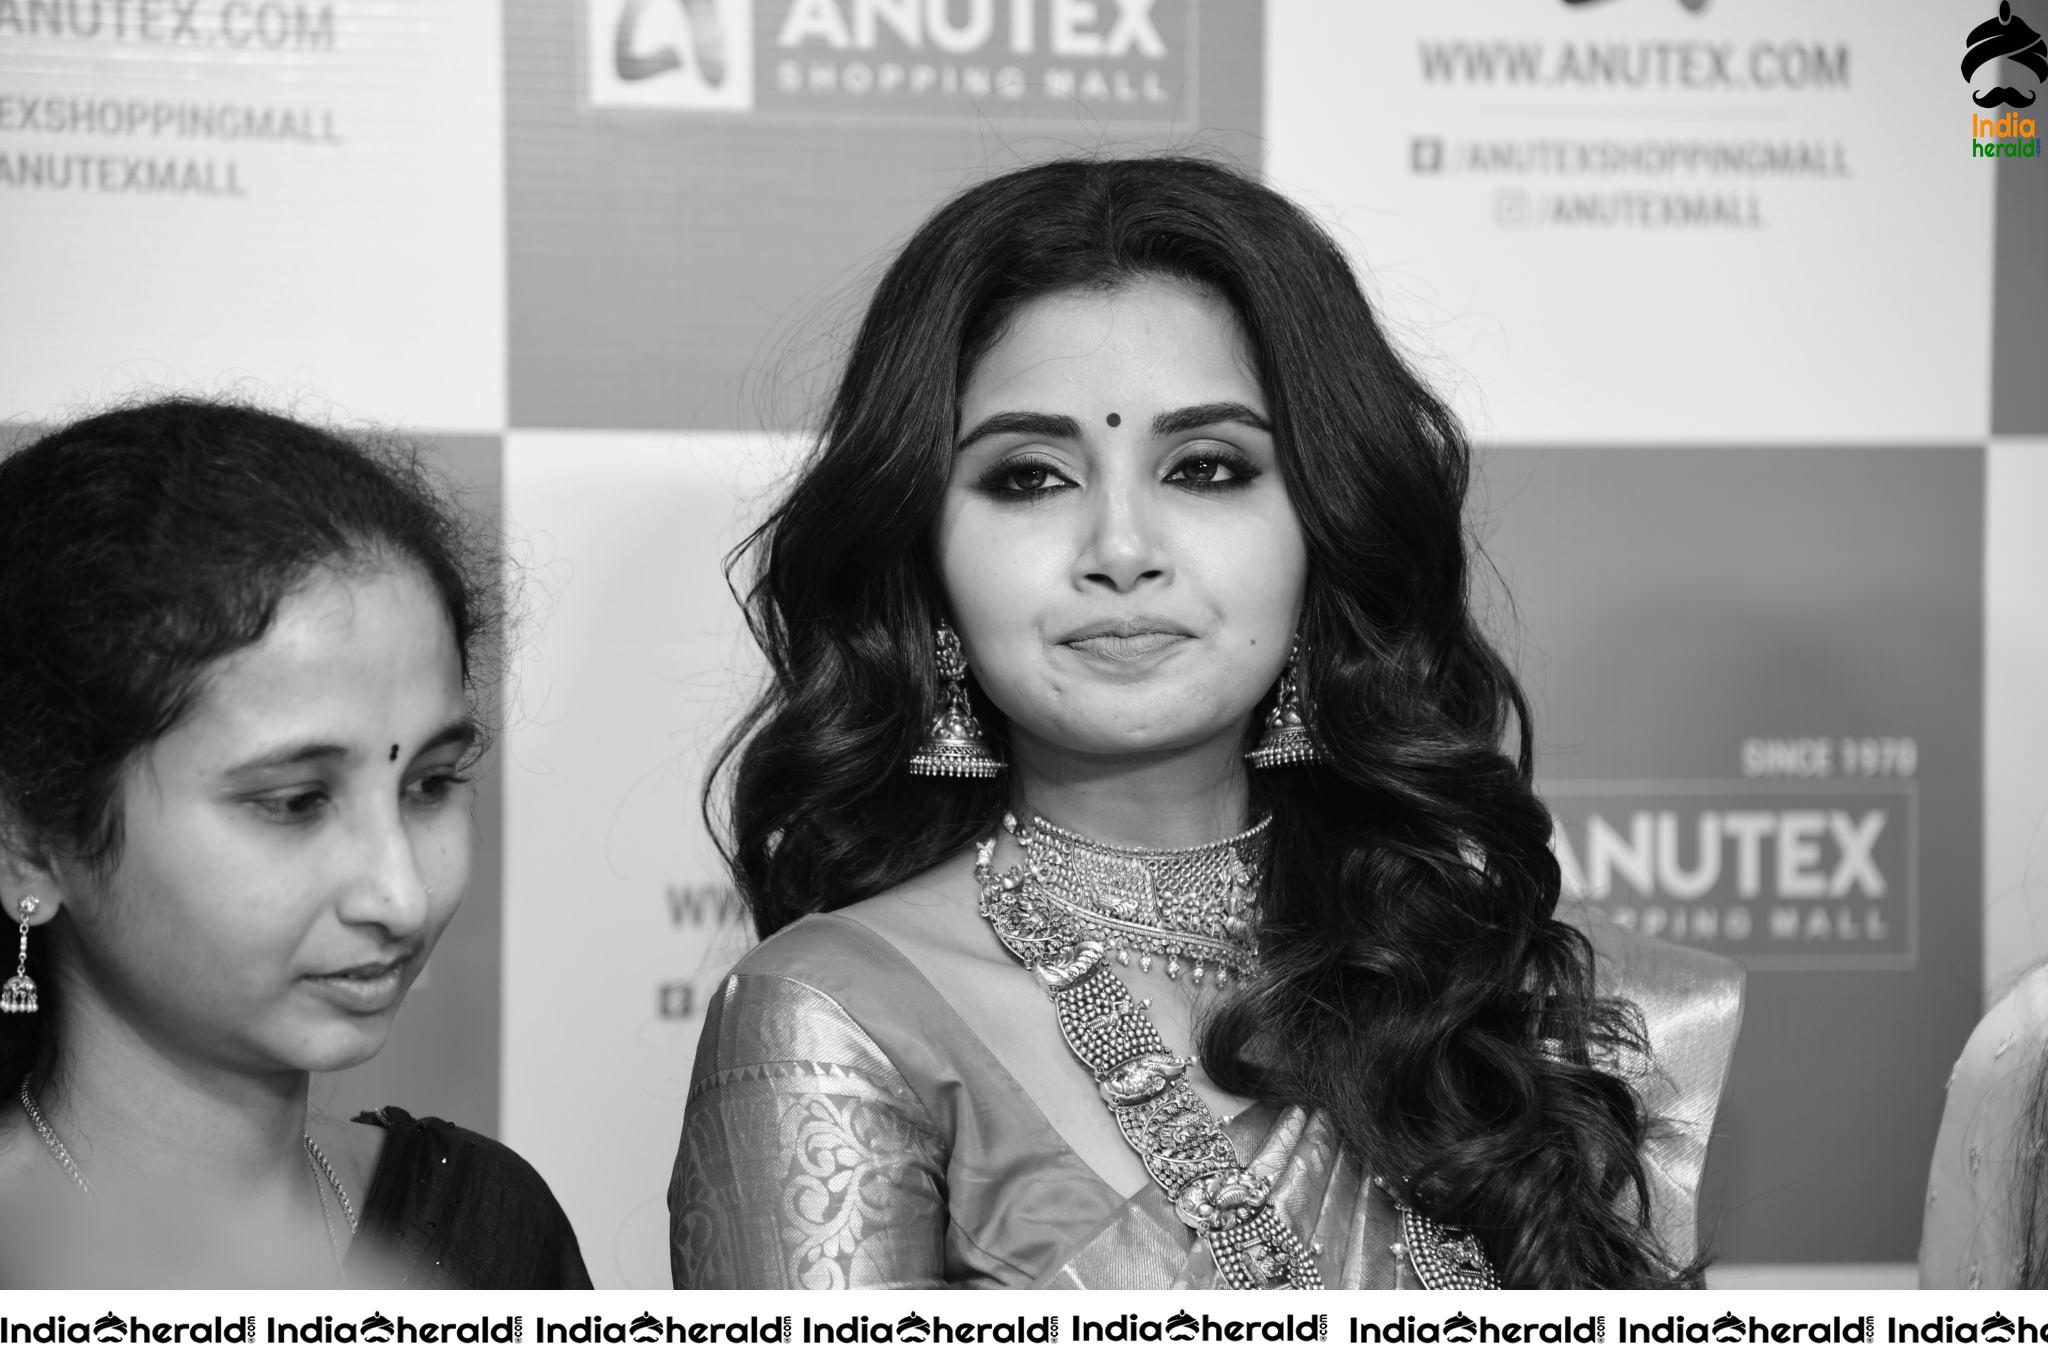 Latest Hot Compilation of Photos of Anupama Parameswaran in Saree Set 2